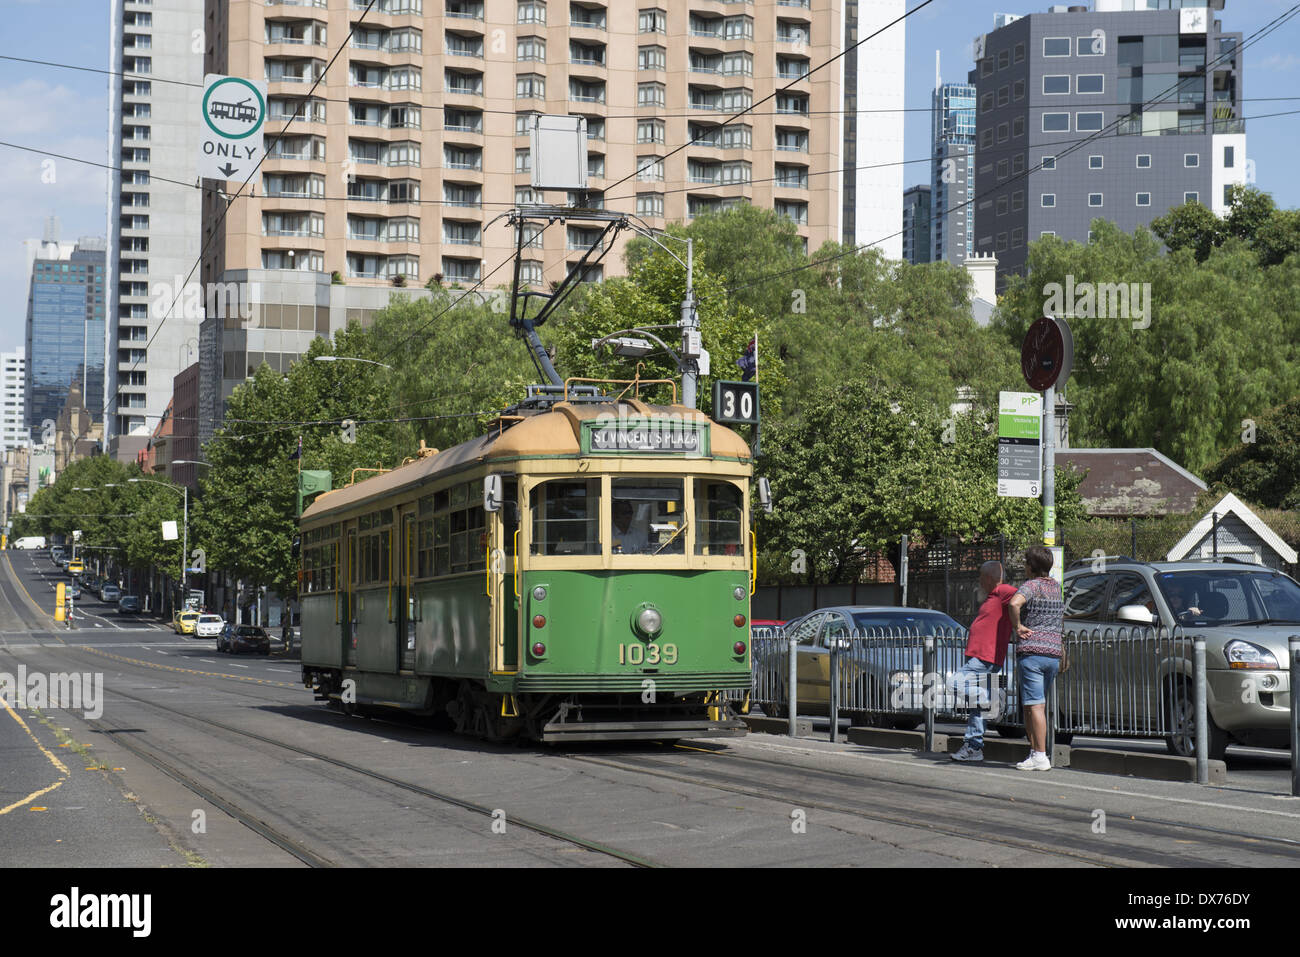 A tram on La Trobe Street. Stock Photo